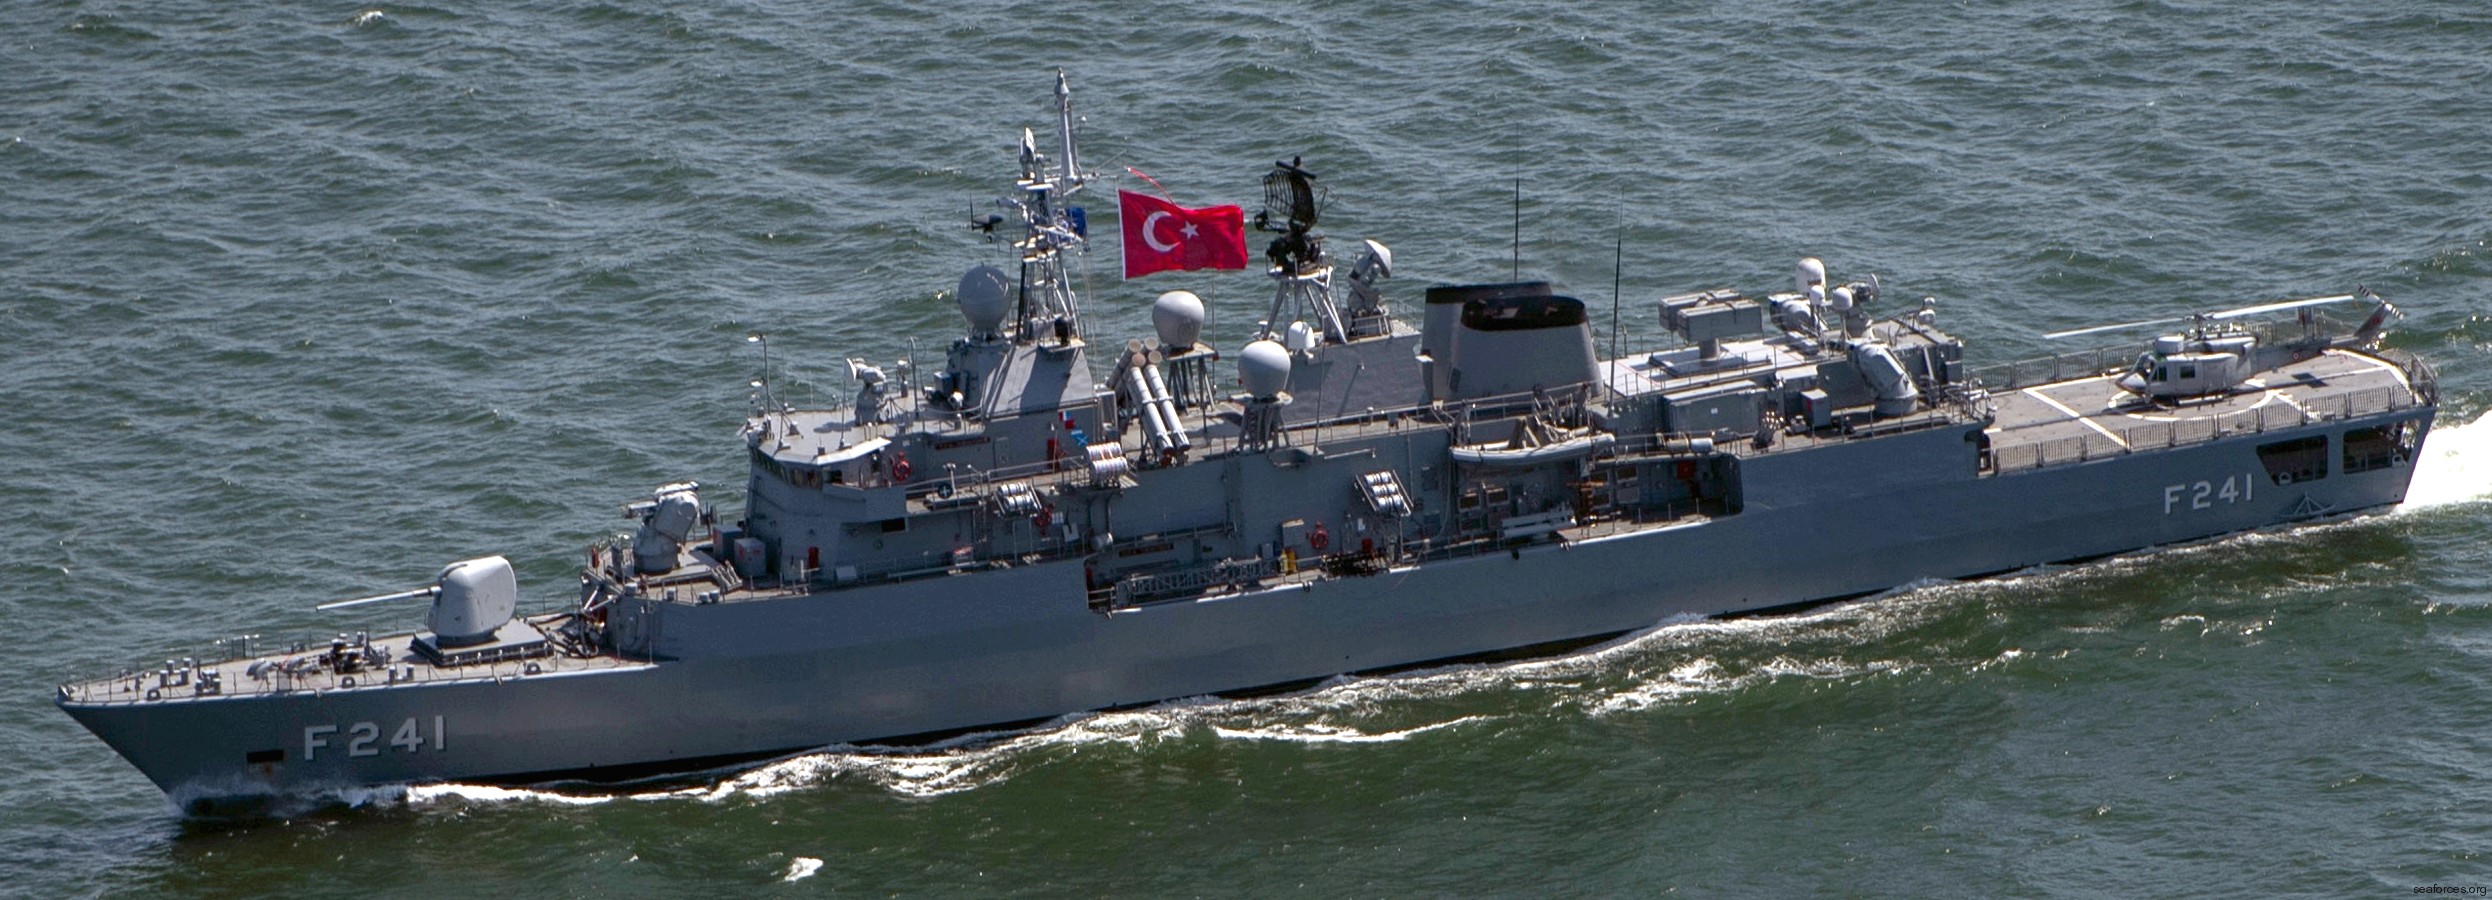 f-241 tcg turgutreis yavuz meko-200tn class frigate turkish navy türk deniz kuvvetleri 06x